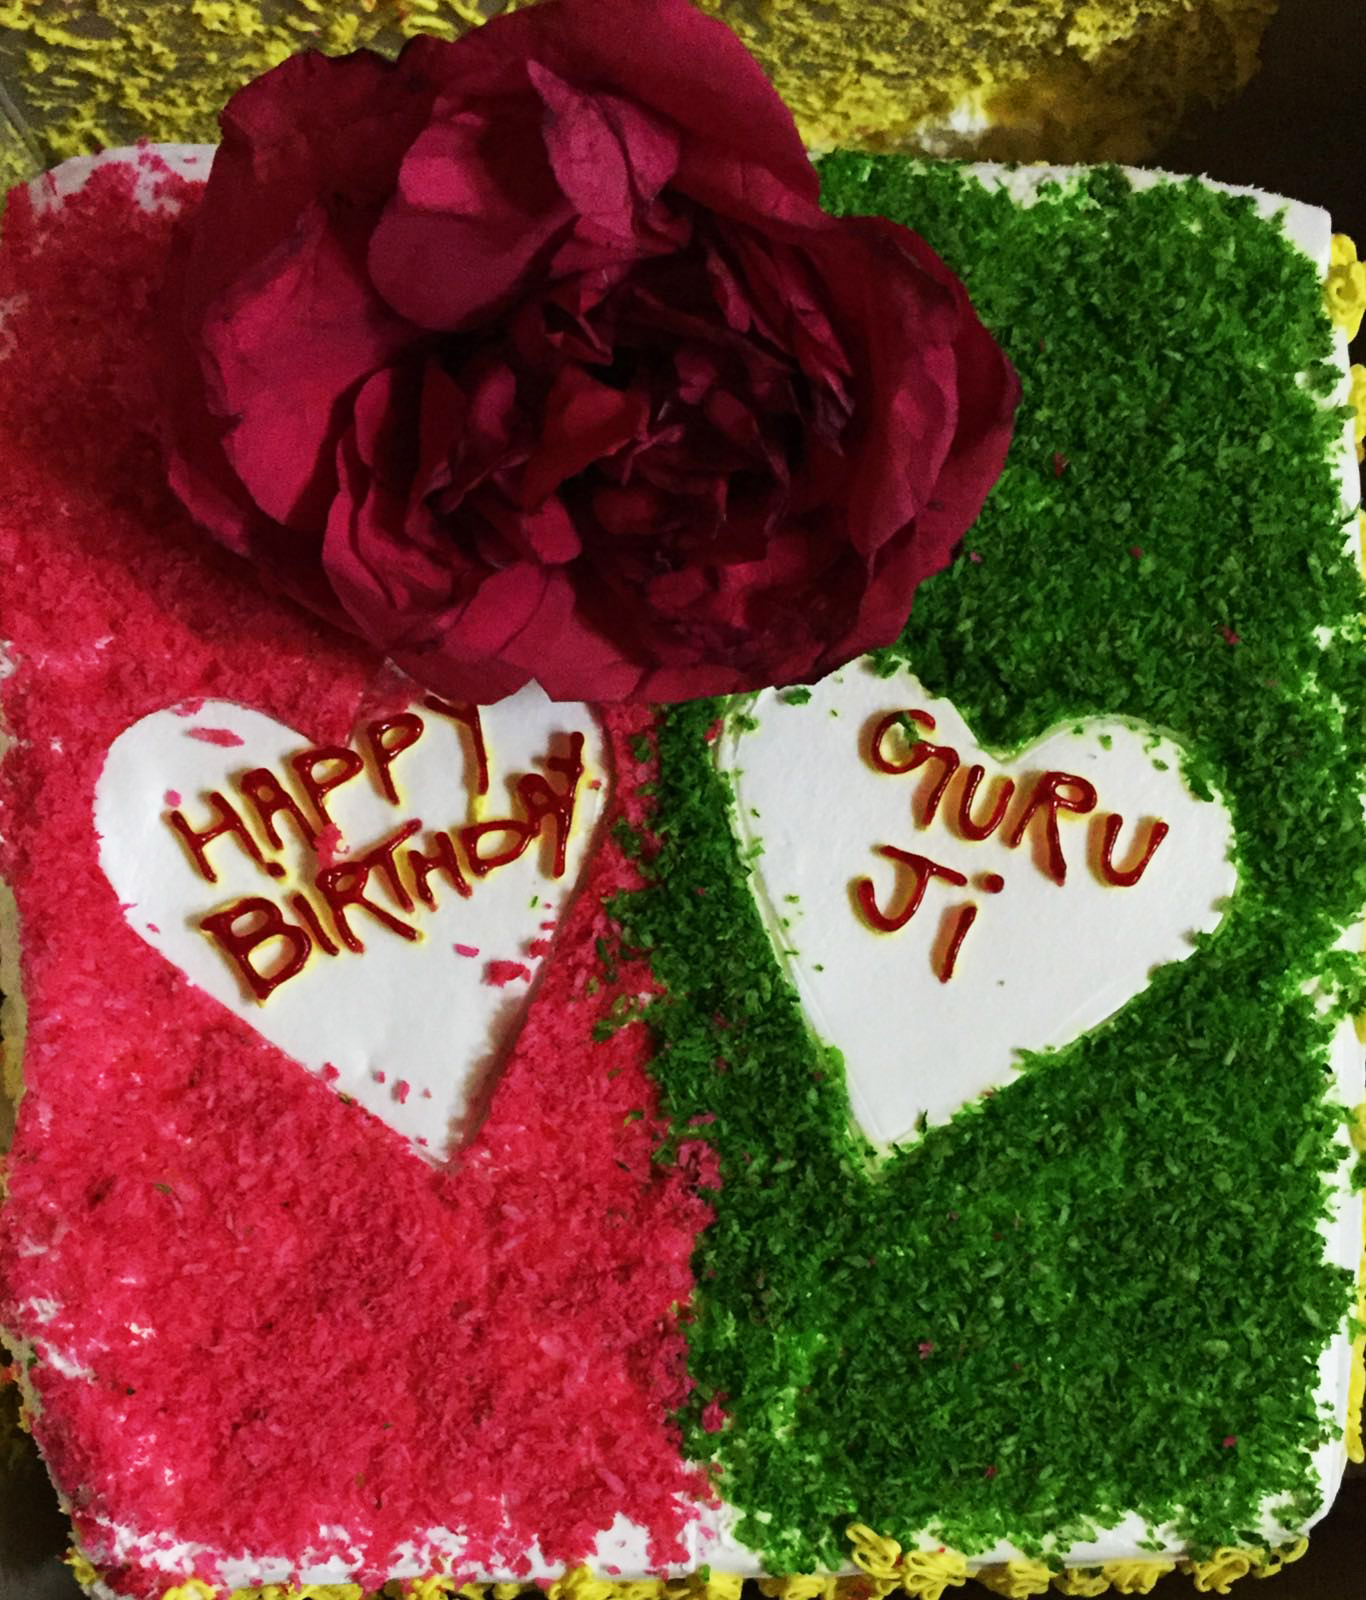 Mohanjis birthday celebration in Jammu 2016 - cake